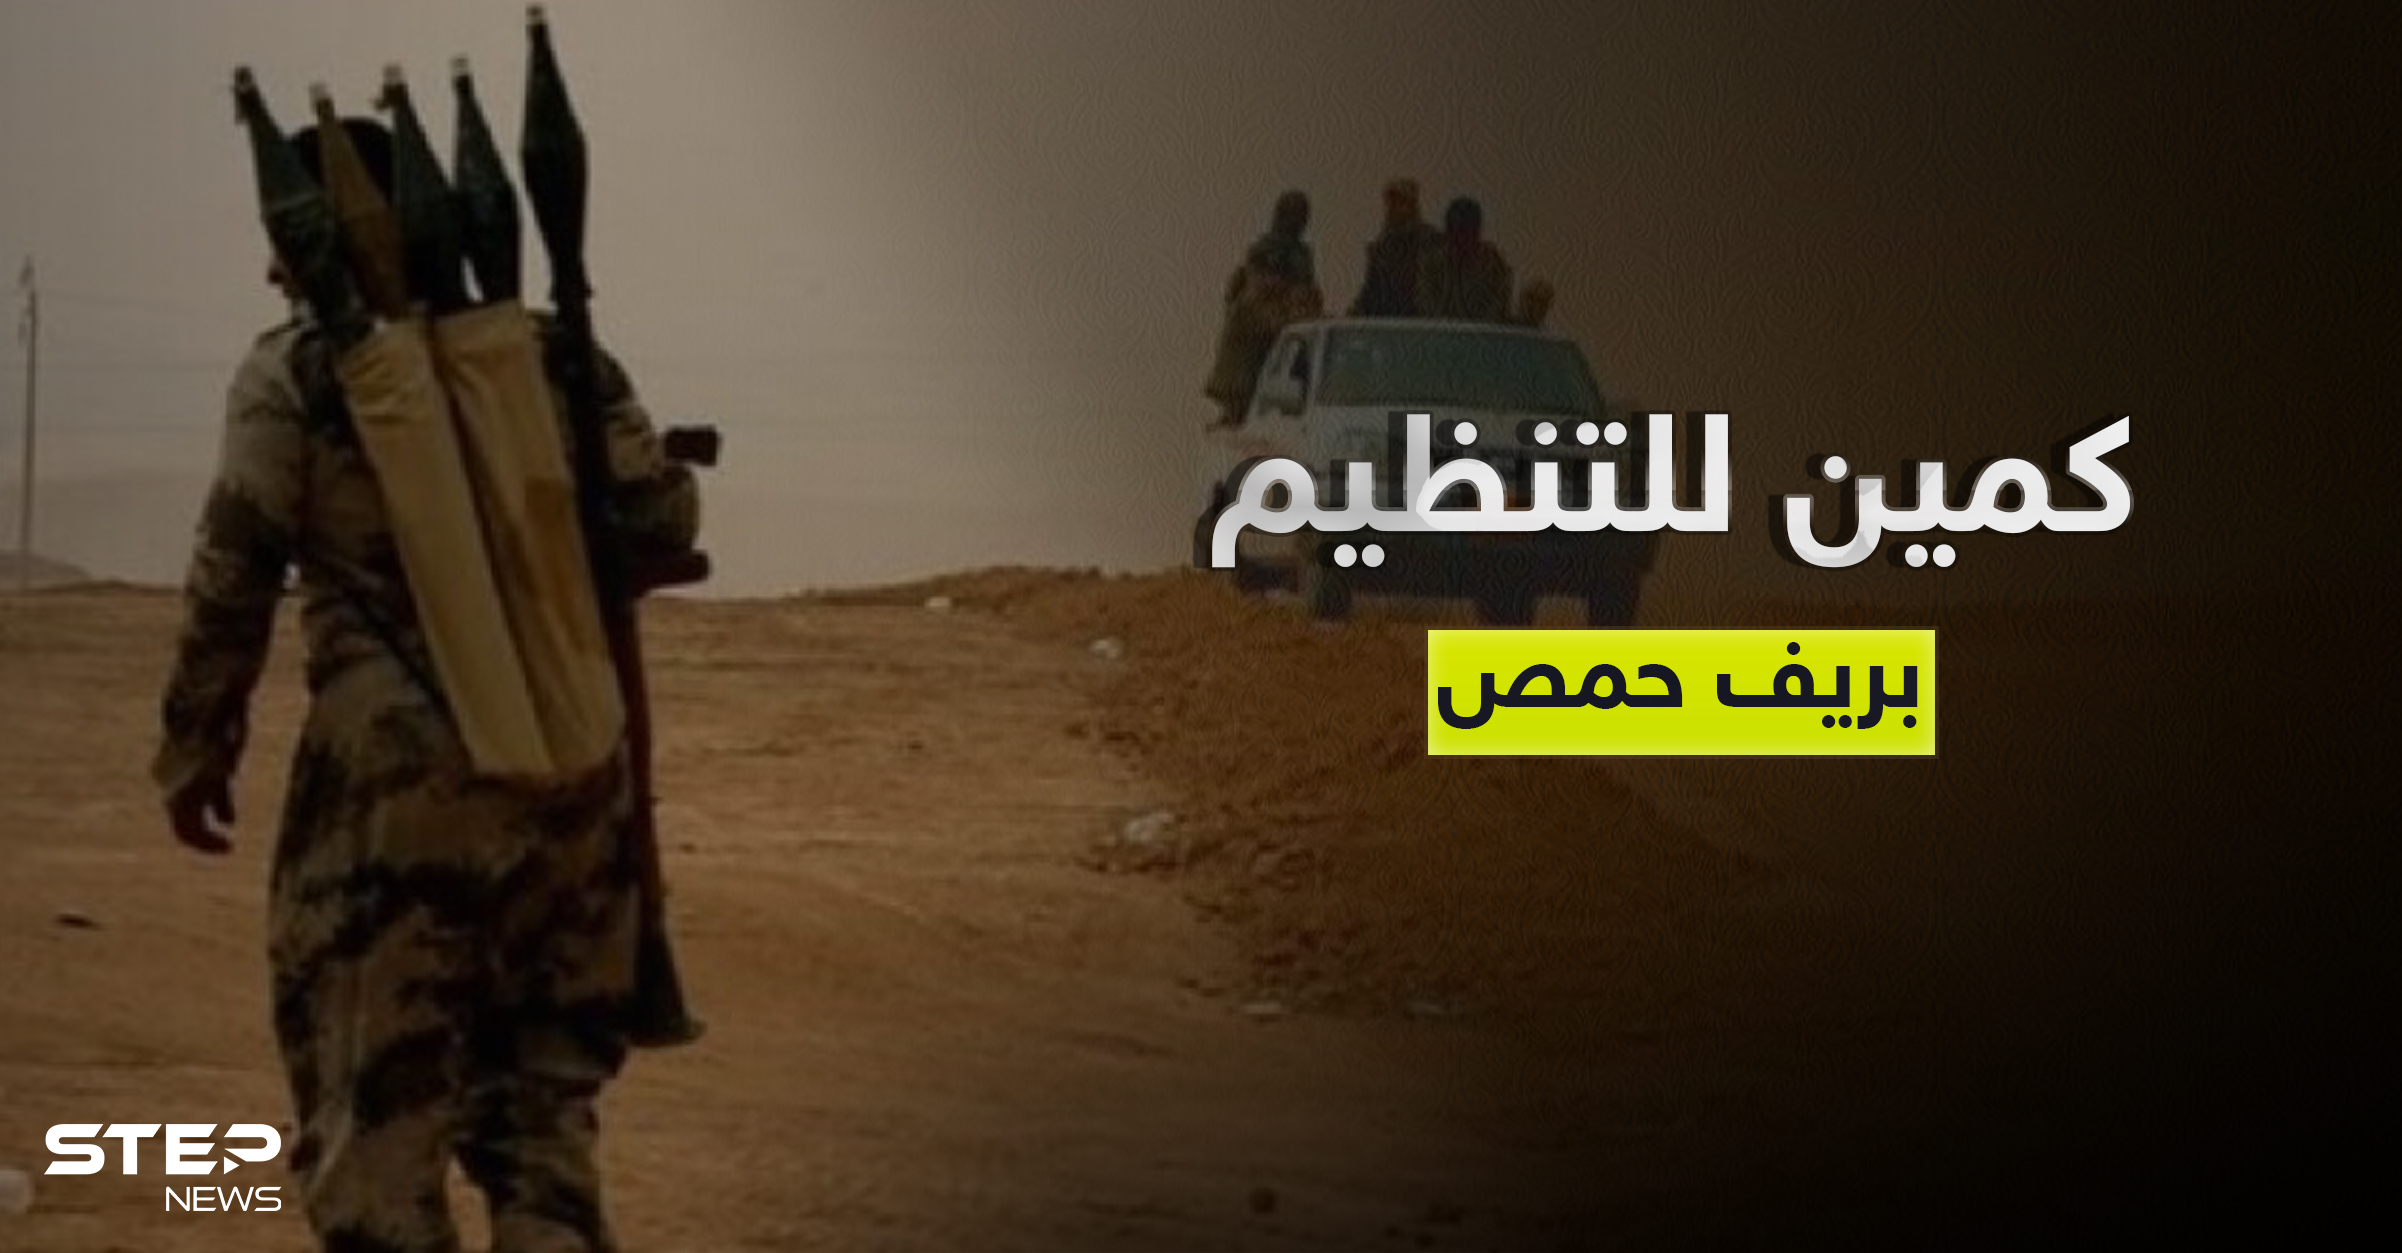 هجوم لتنظيم داعش يوقع قتلى من ميليشيا فلسطينية في ريف حمص